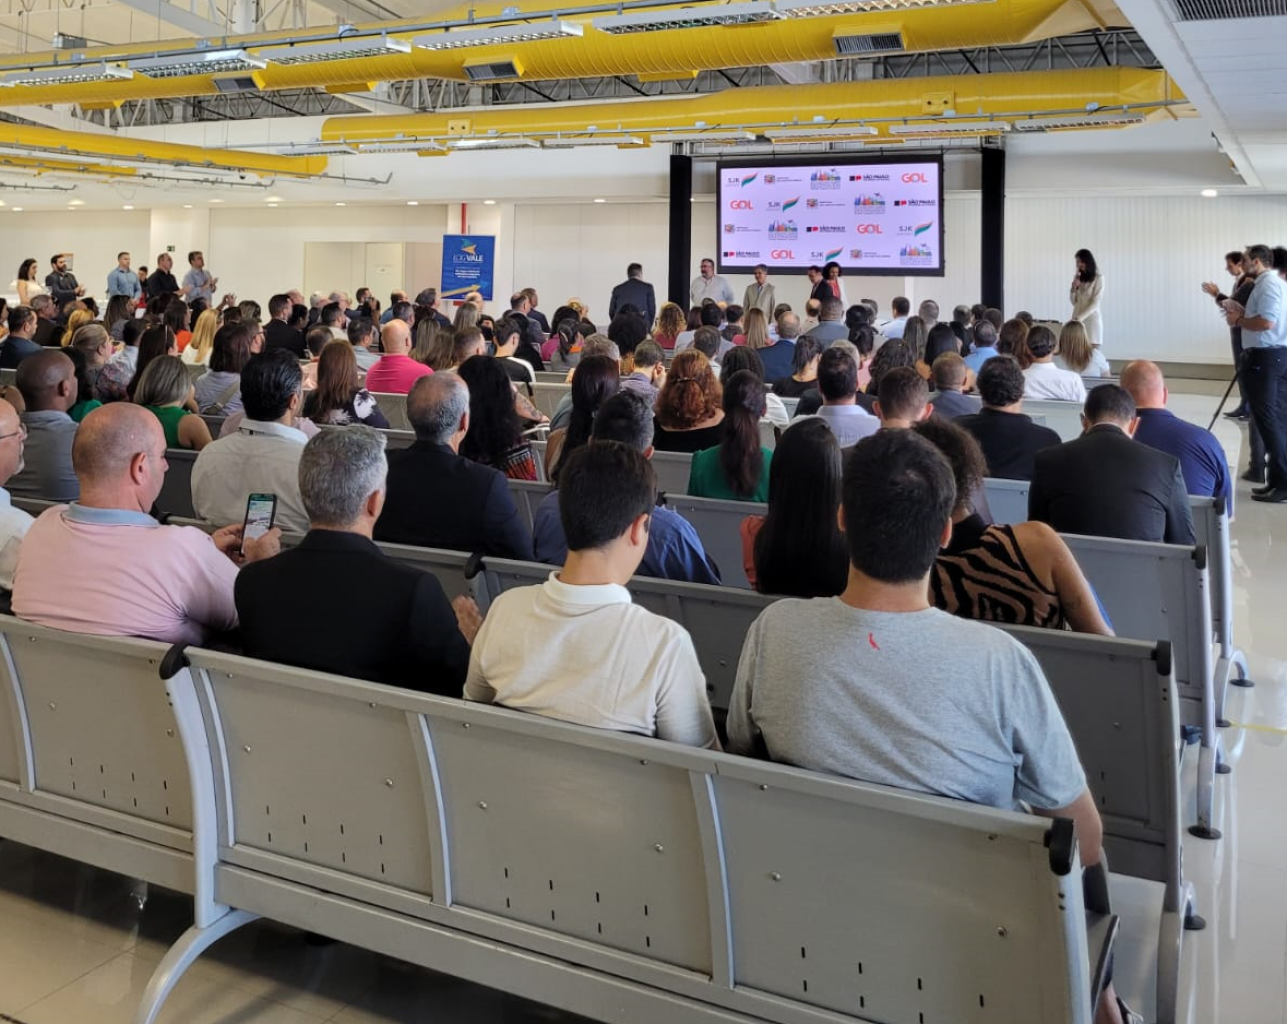 SINHORES participa do evento de apresentação do novo voo da Gol Linhas Aéreas no SJK Airport